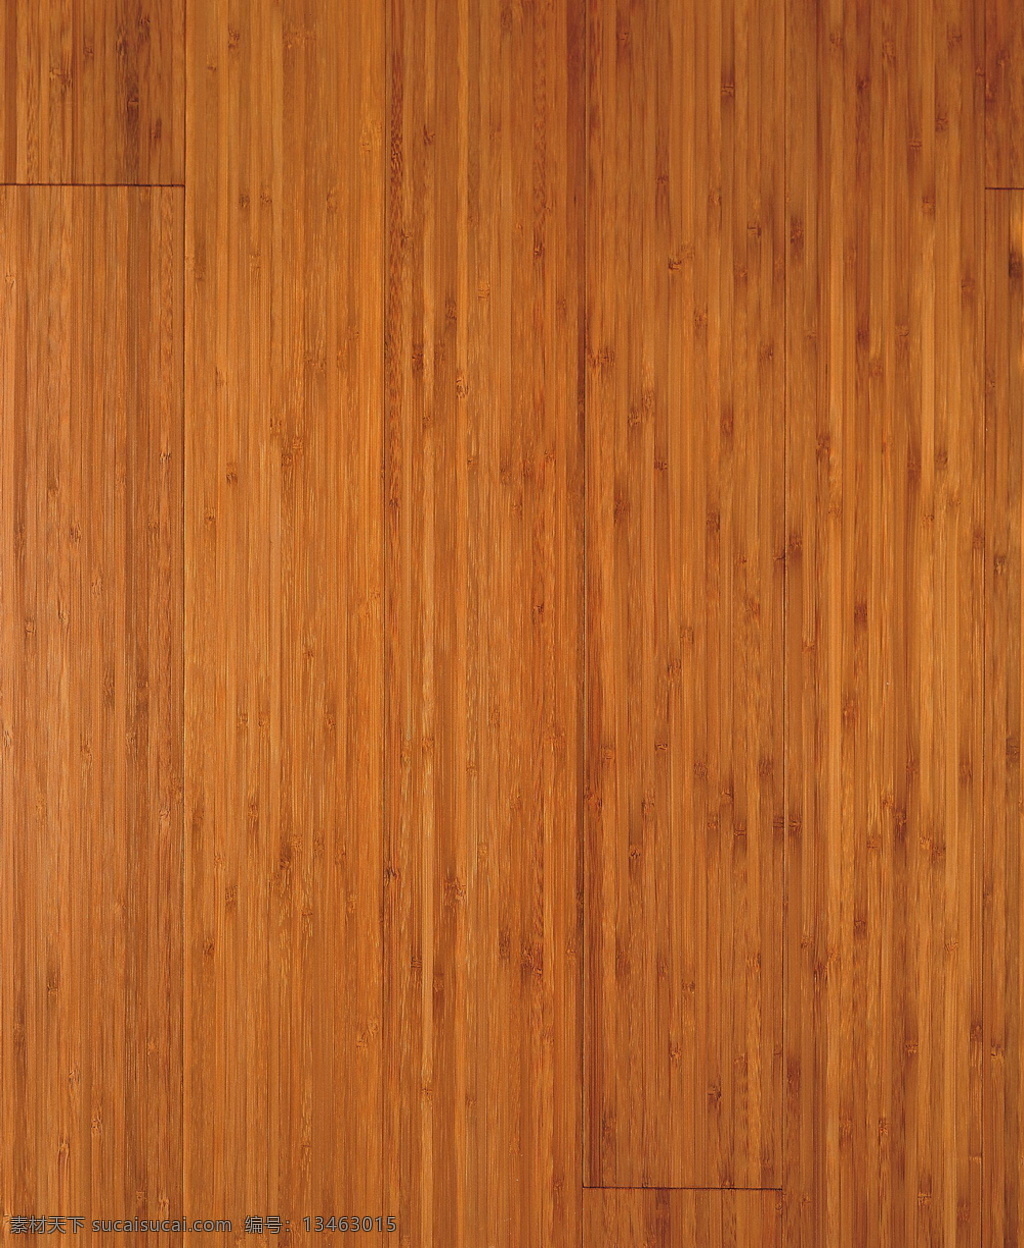 木材 木纹 效果图 3d 模型 3d材质 3d模型 3d模型下载 木纹素材 木纹效果图 3d模型素材 材质贴图